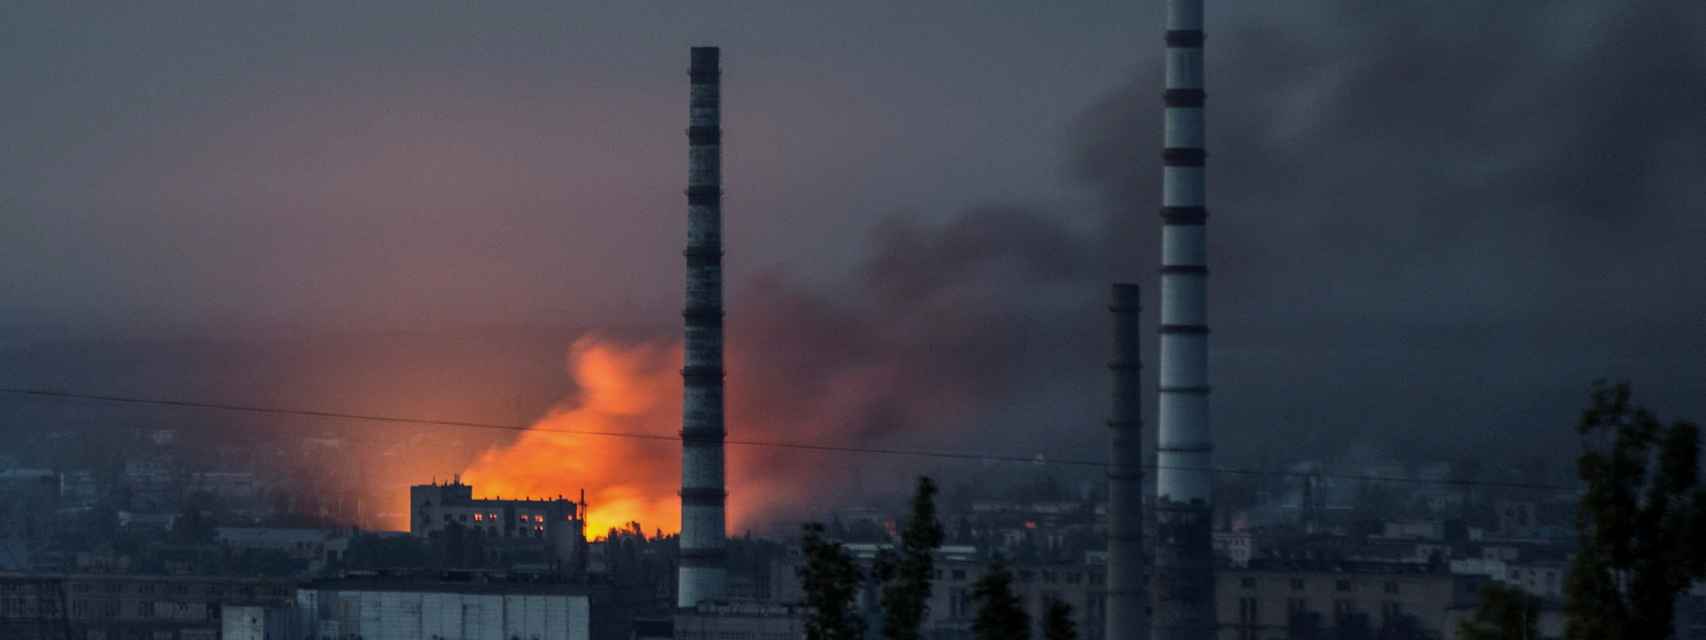 Fuego y humo salen de la planta de Azot, en Severodonetsk, tras un ataque ruso a la zona de Donetsk